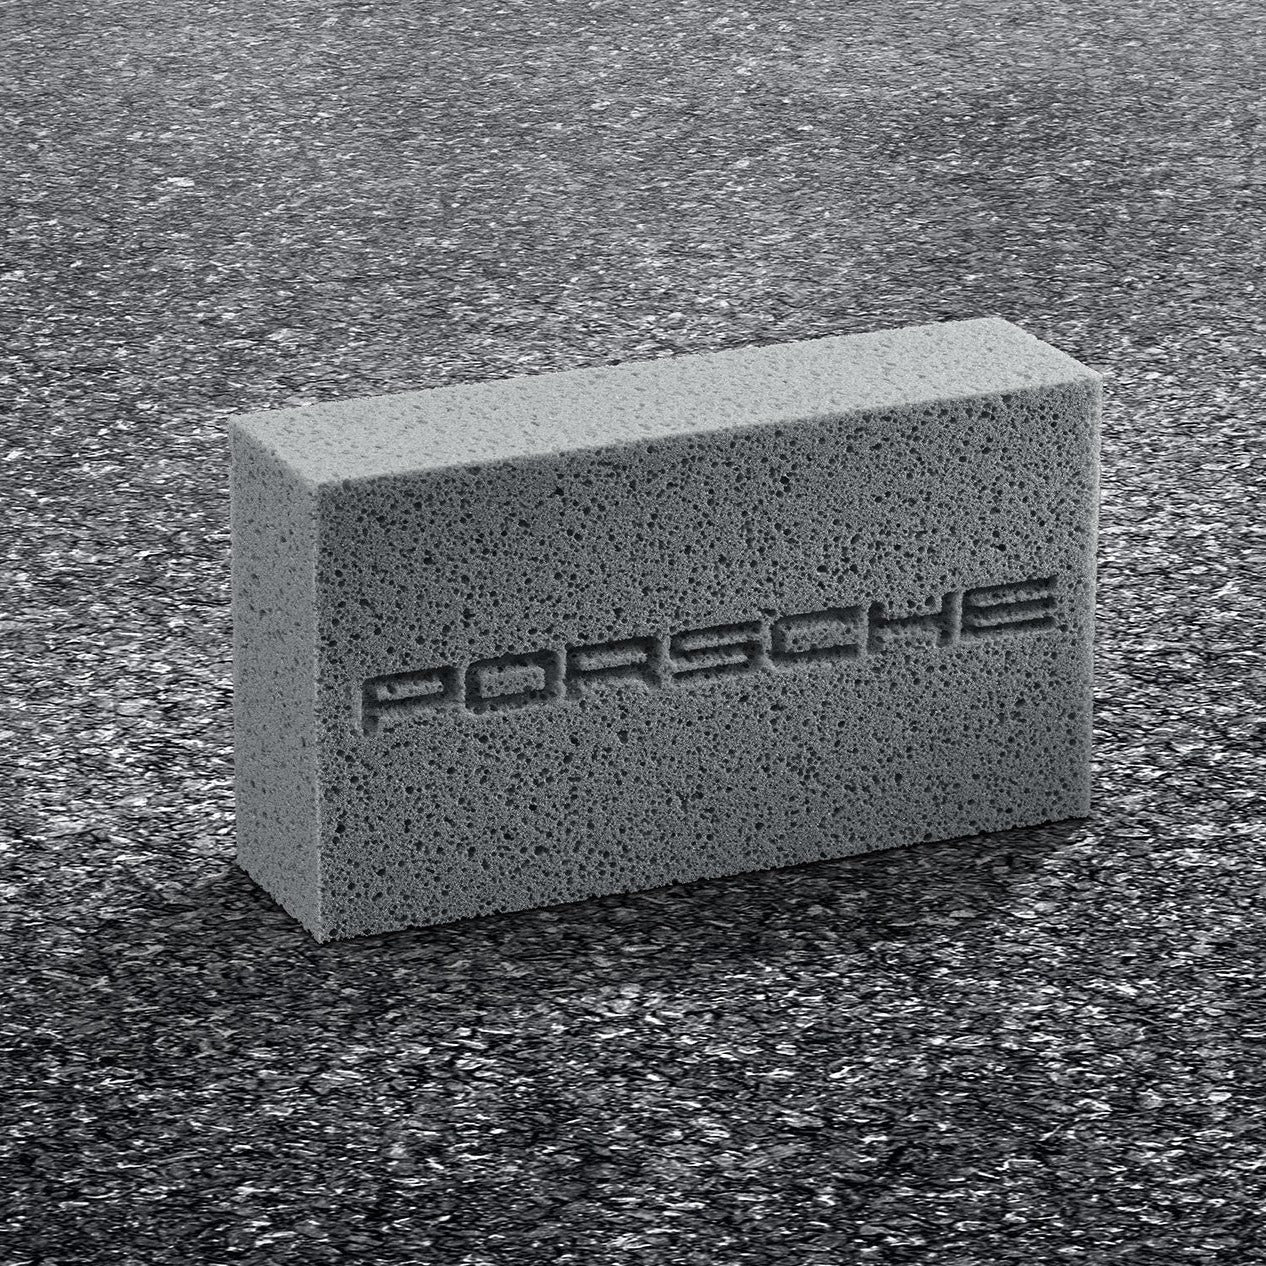 Porsche Tequipment Car Washing Sponge with PORSCHE logo